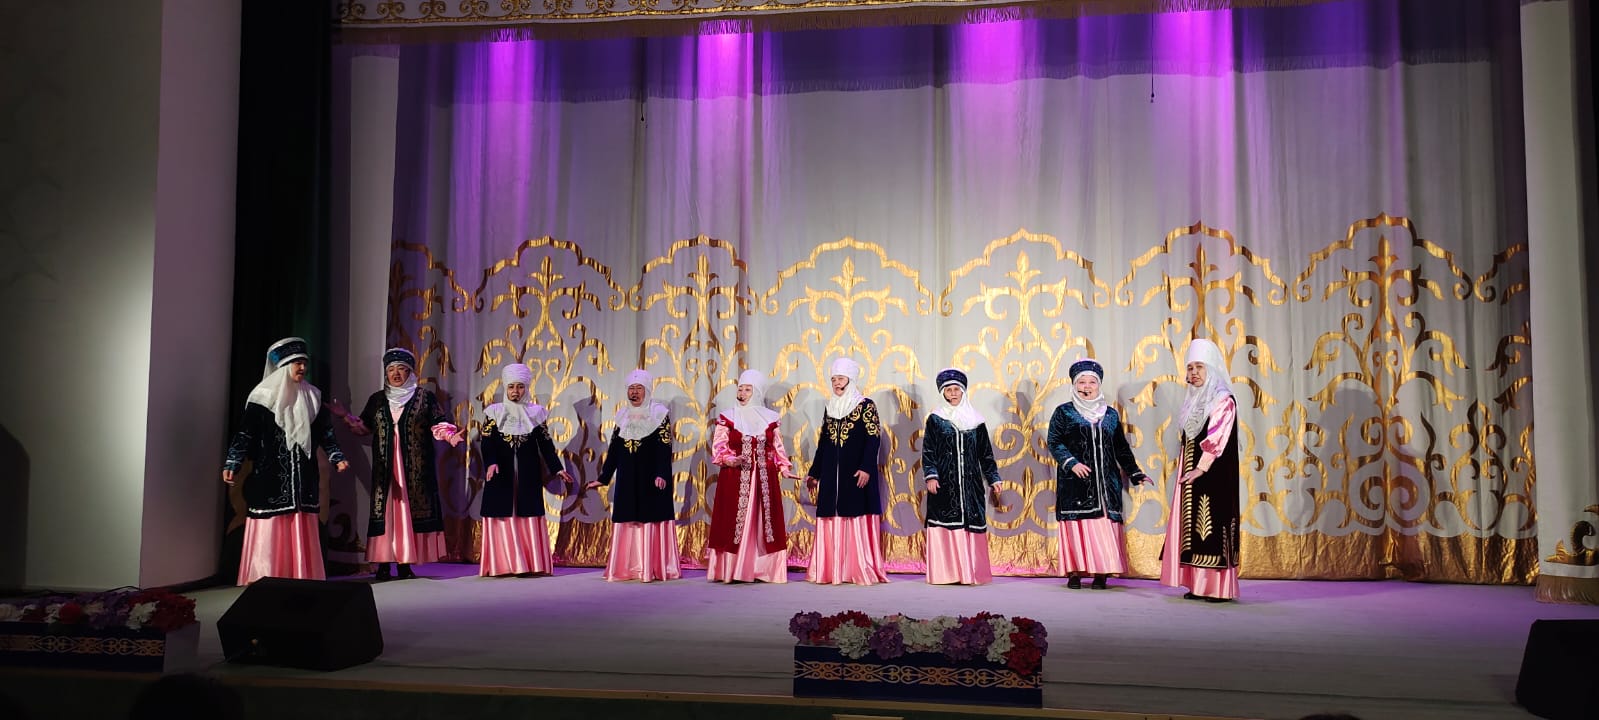 В честь тридцатилетия Независимости Республики Казахстан, 3 декабря прошел городской фестиваль «ӨНЕРІМІЗ САҒАН, ҚАЗАҚСТАН!»,